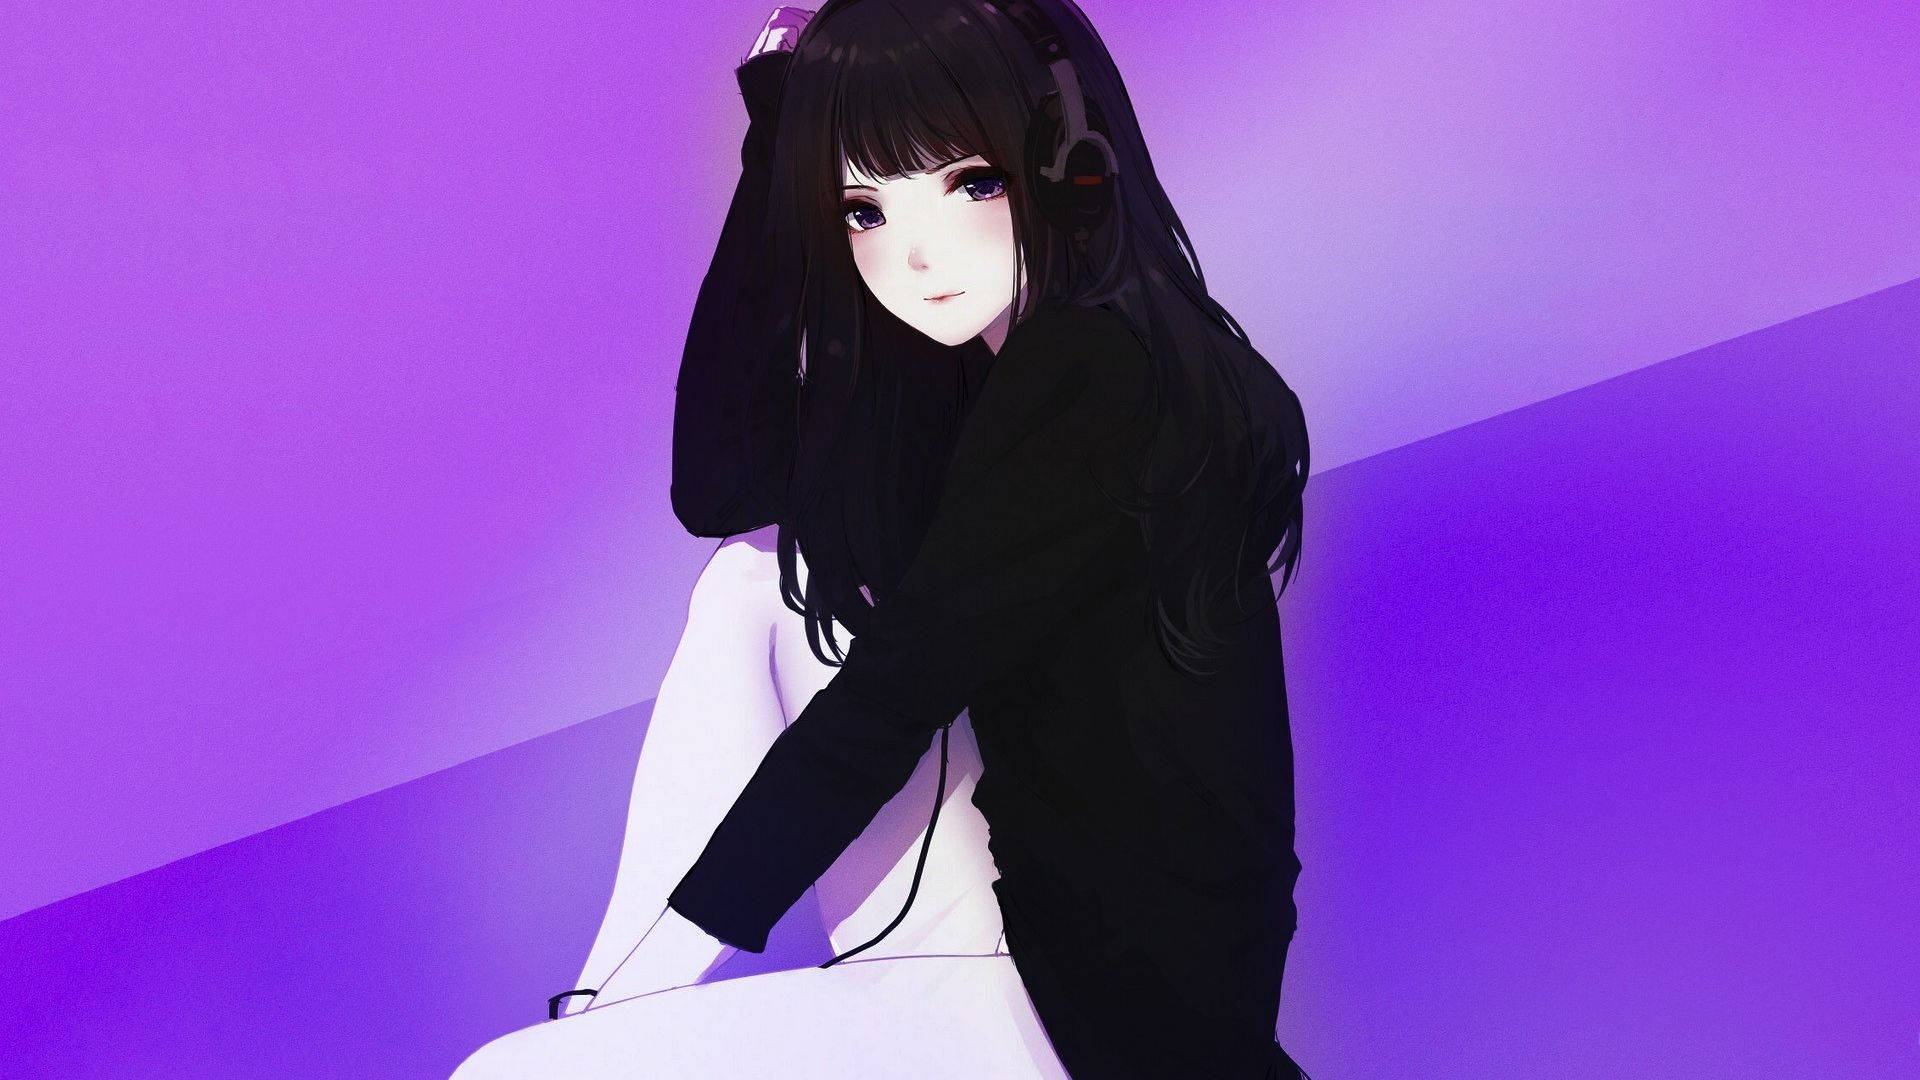 Anime Girl Hoodie In Black Wallpaper